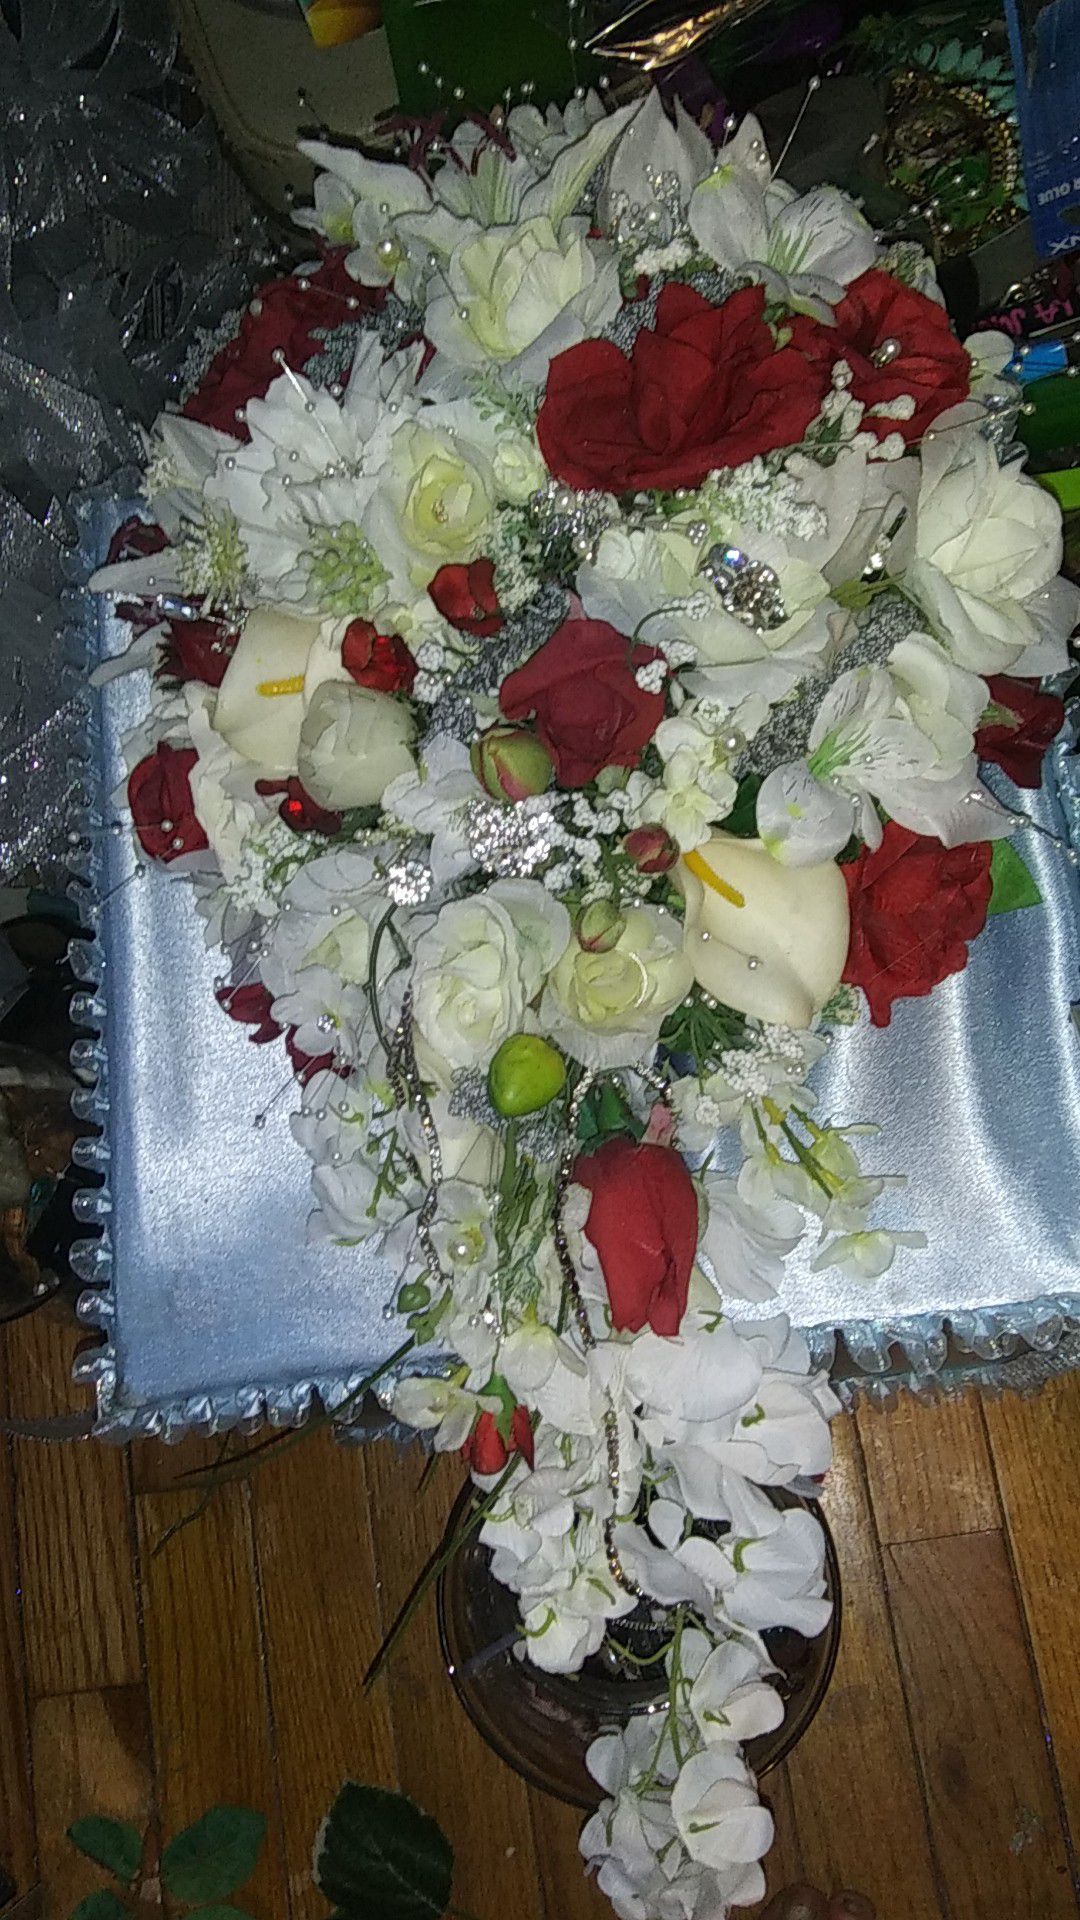 Certified wedding floral designer